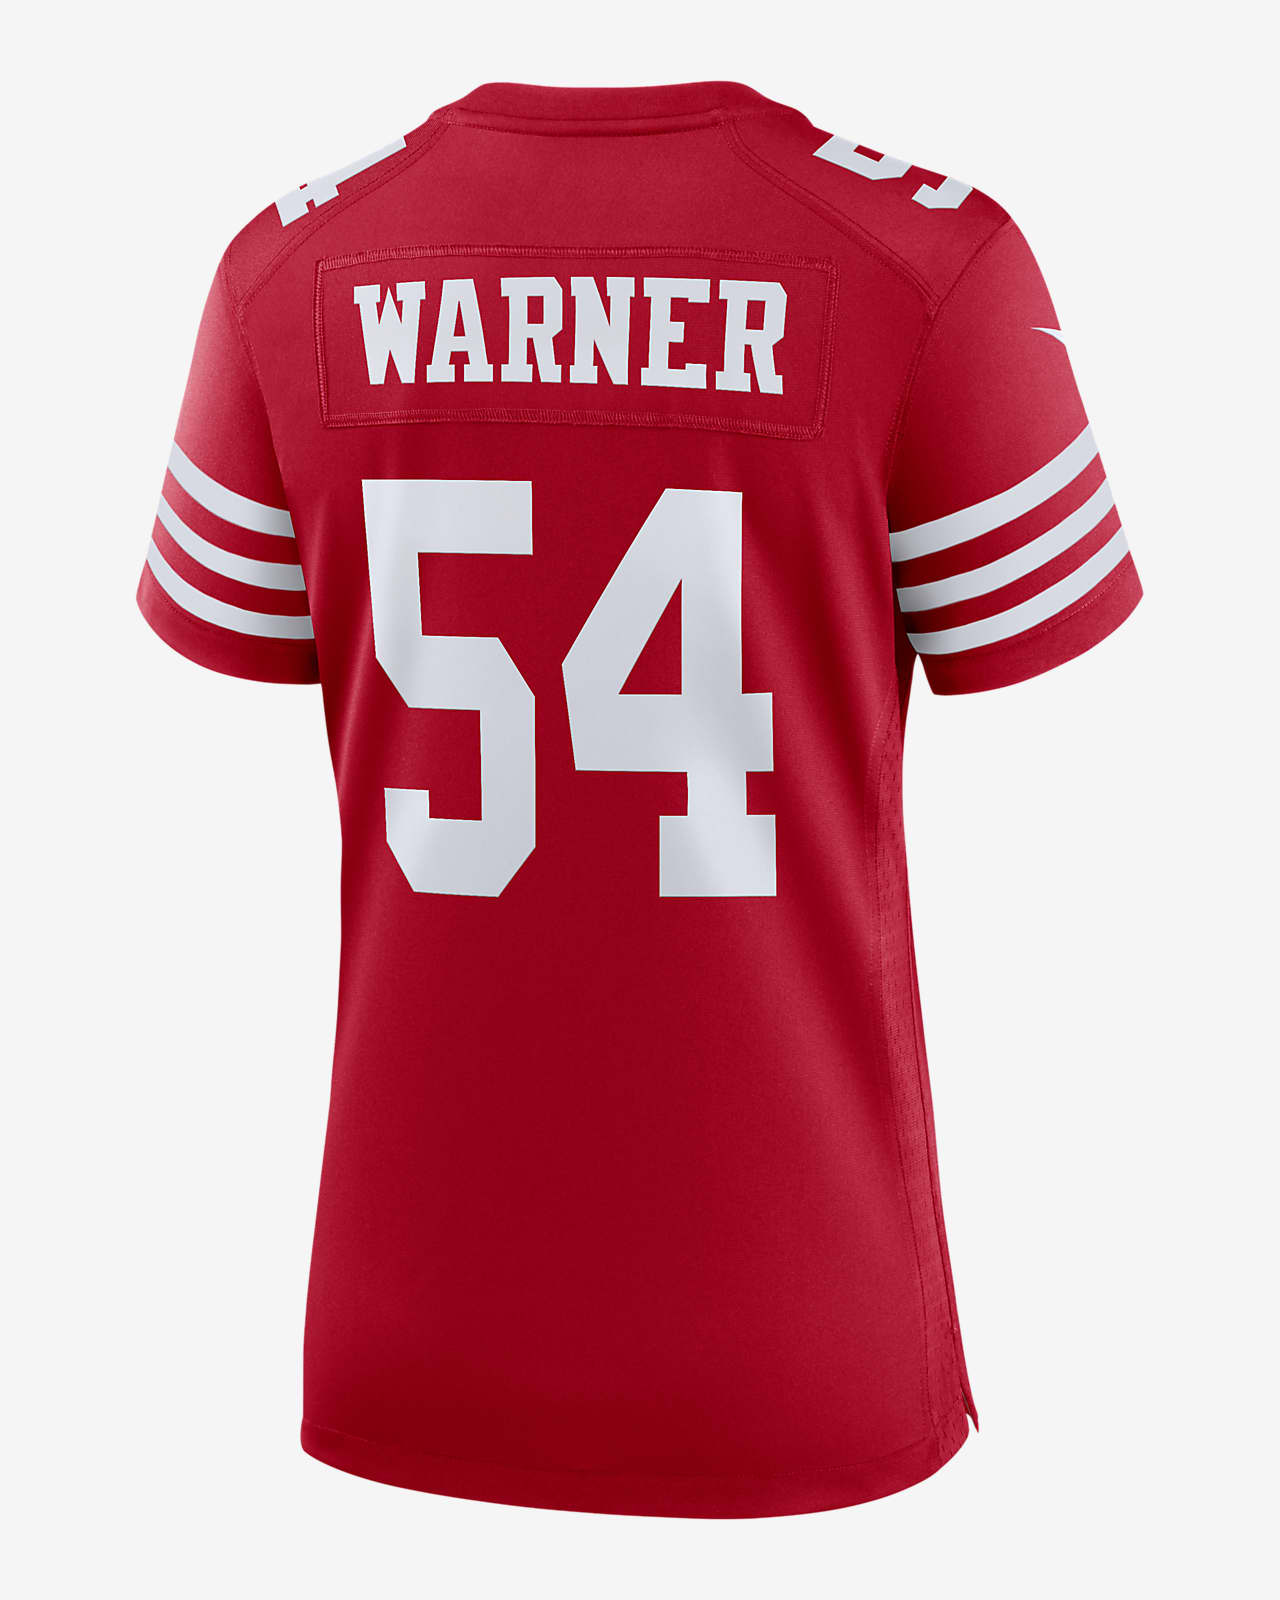 49ers jersey t shirt